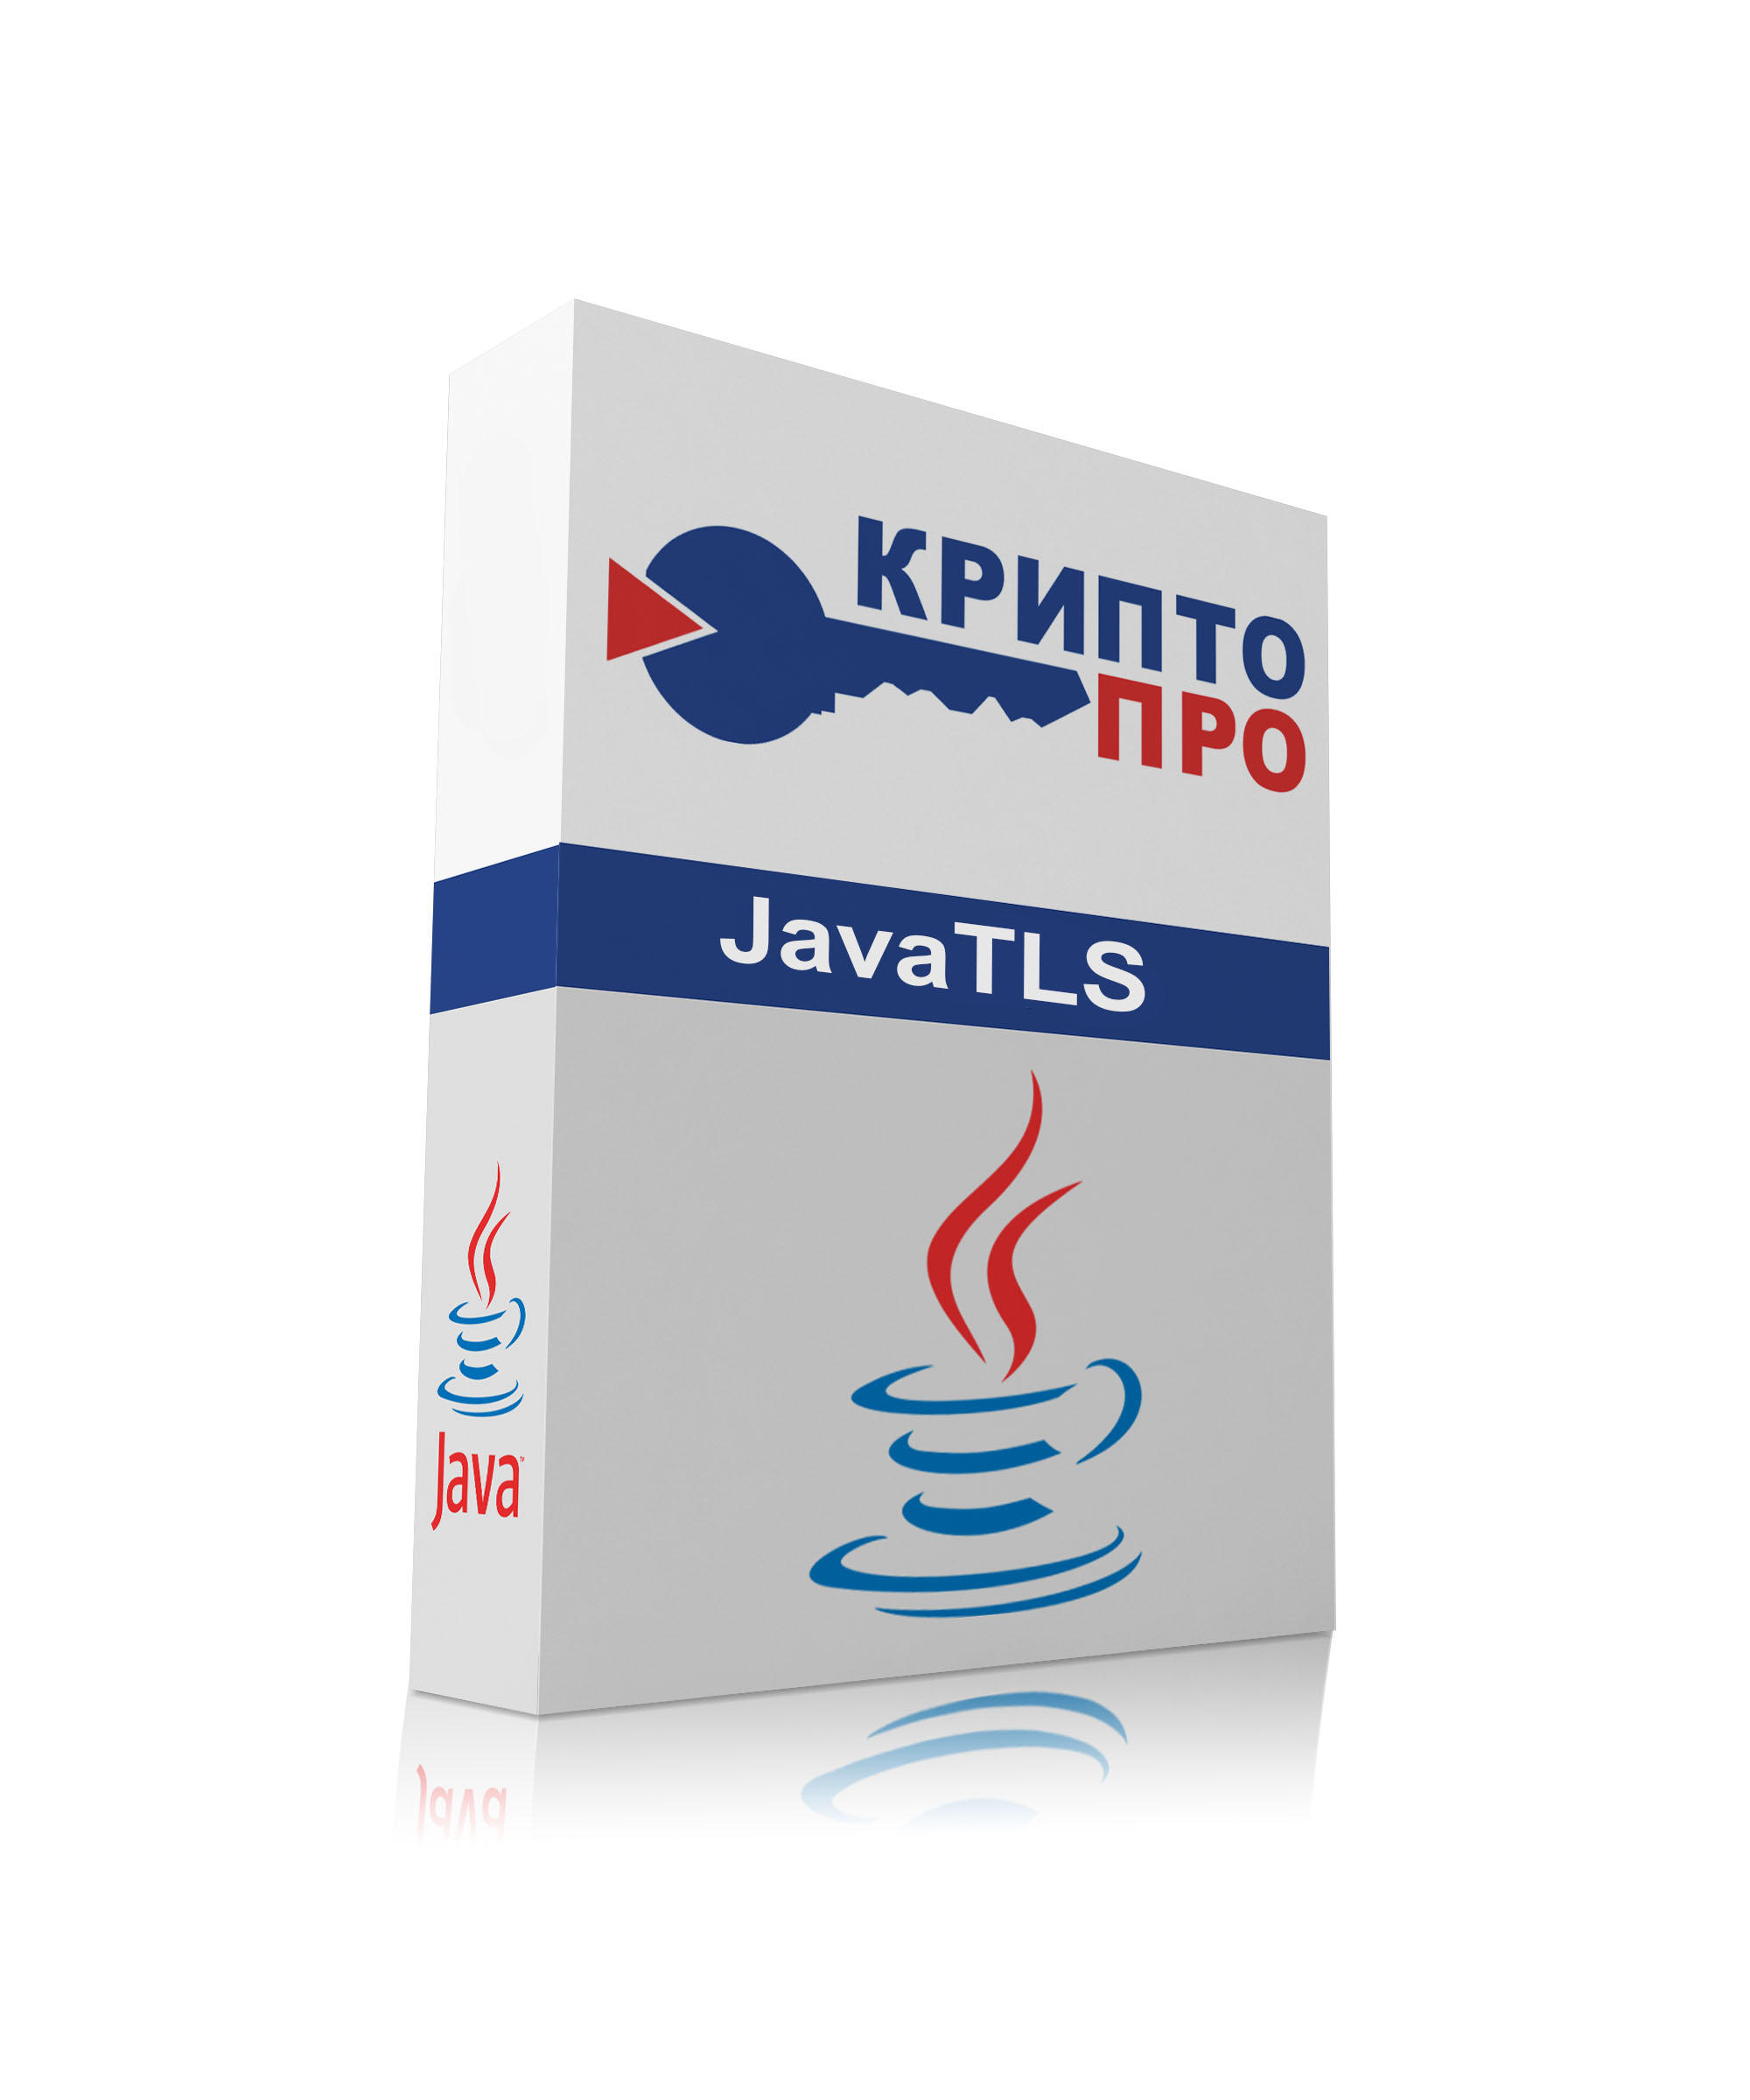 Лицензия на право использования "КриптоПро JavaTLS" версии 2.0 на одном сервере